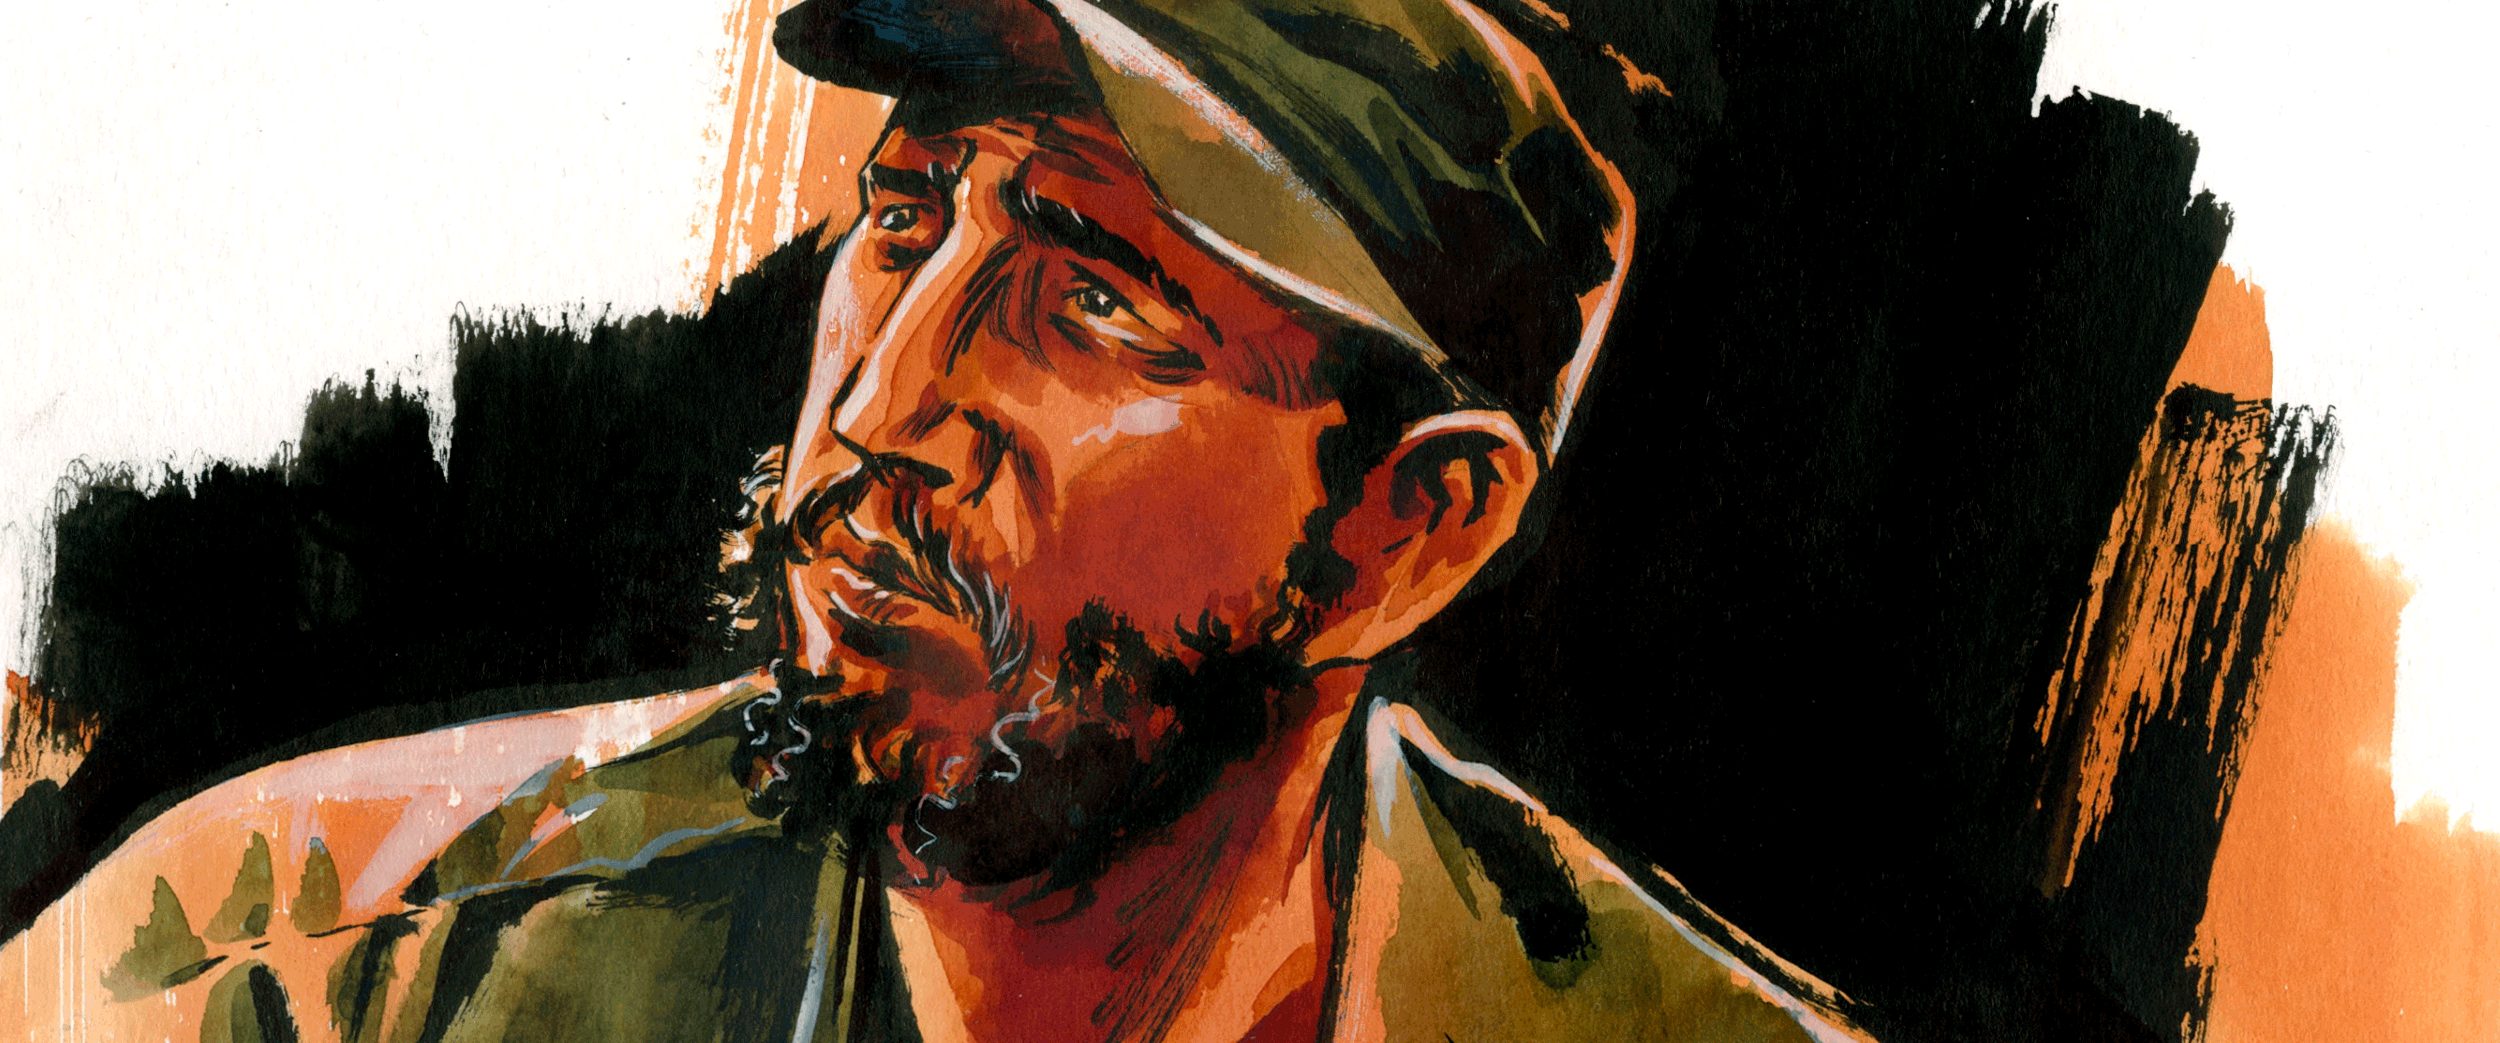 Fidel Castro e as suas aventuras na banda desenhada